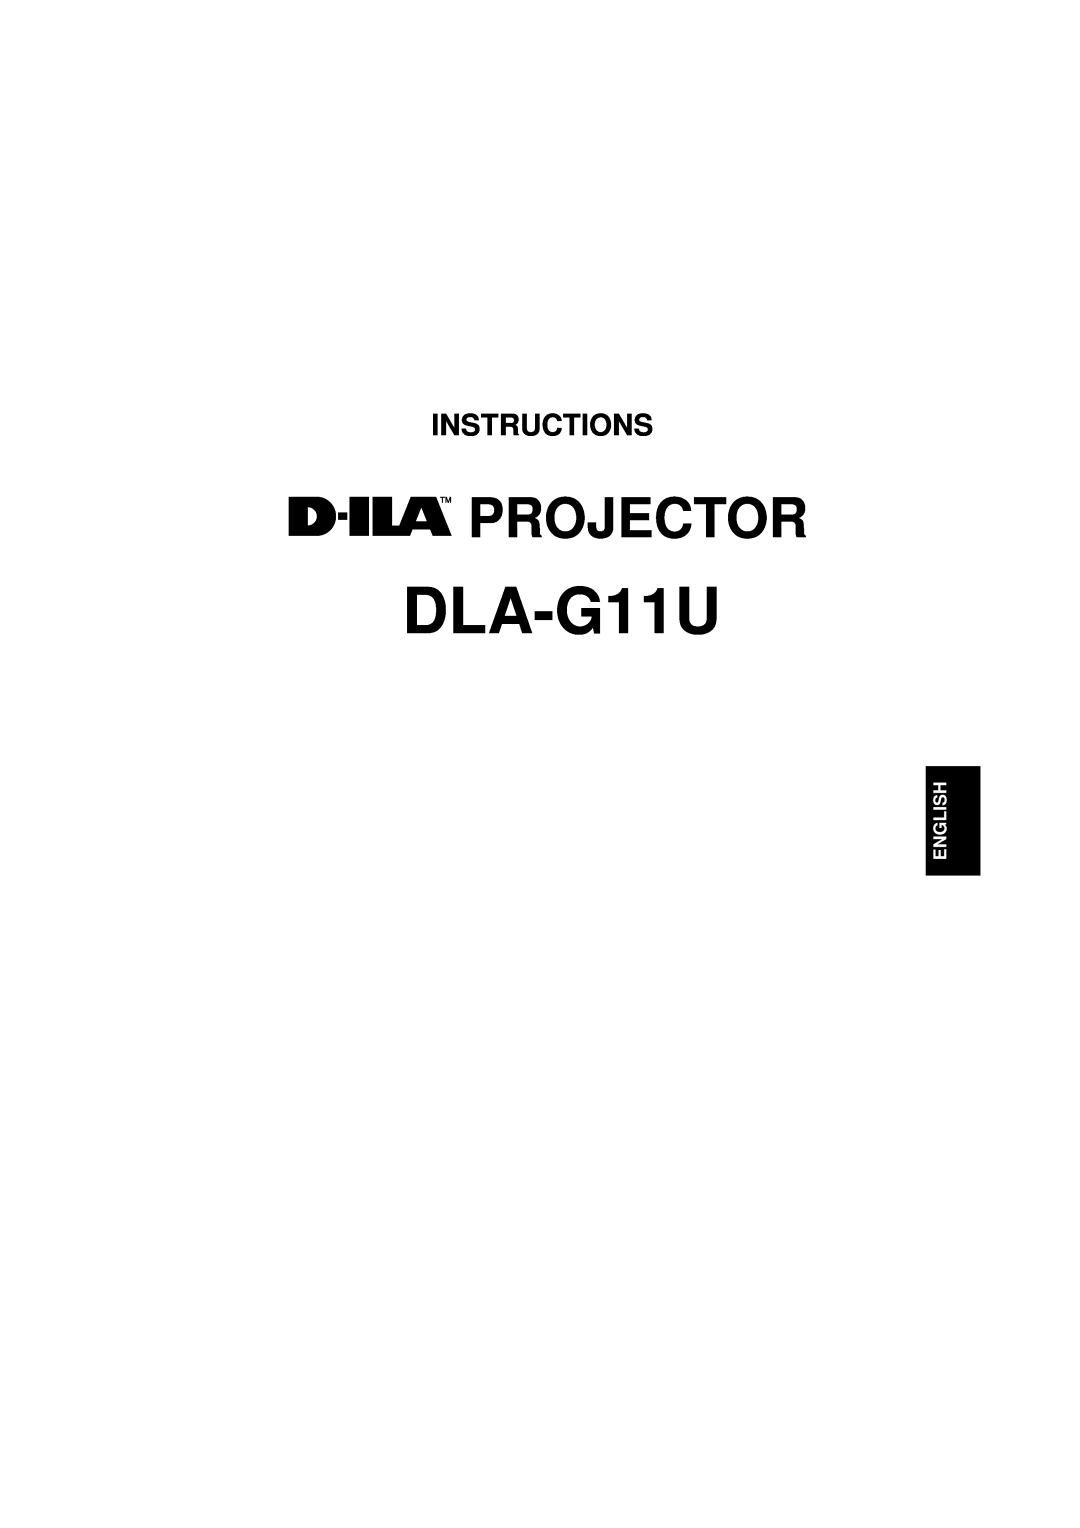 JVC DLA-G11U manual Projector, Instructions, English 